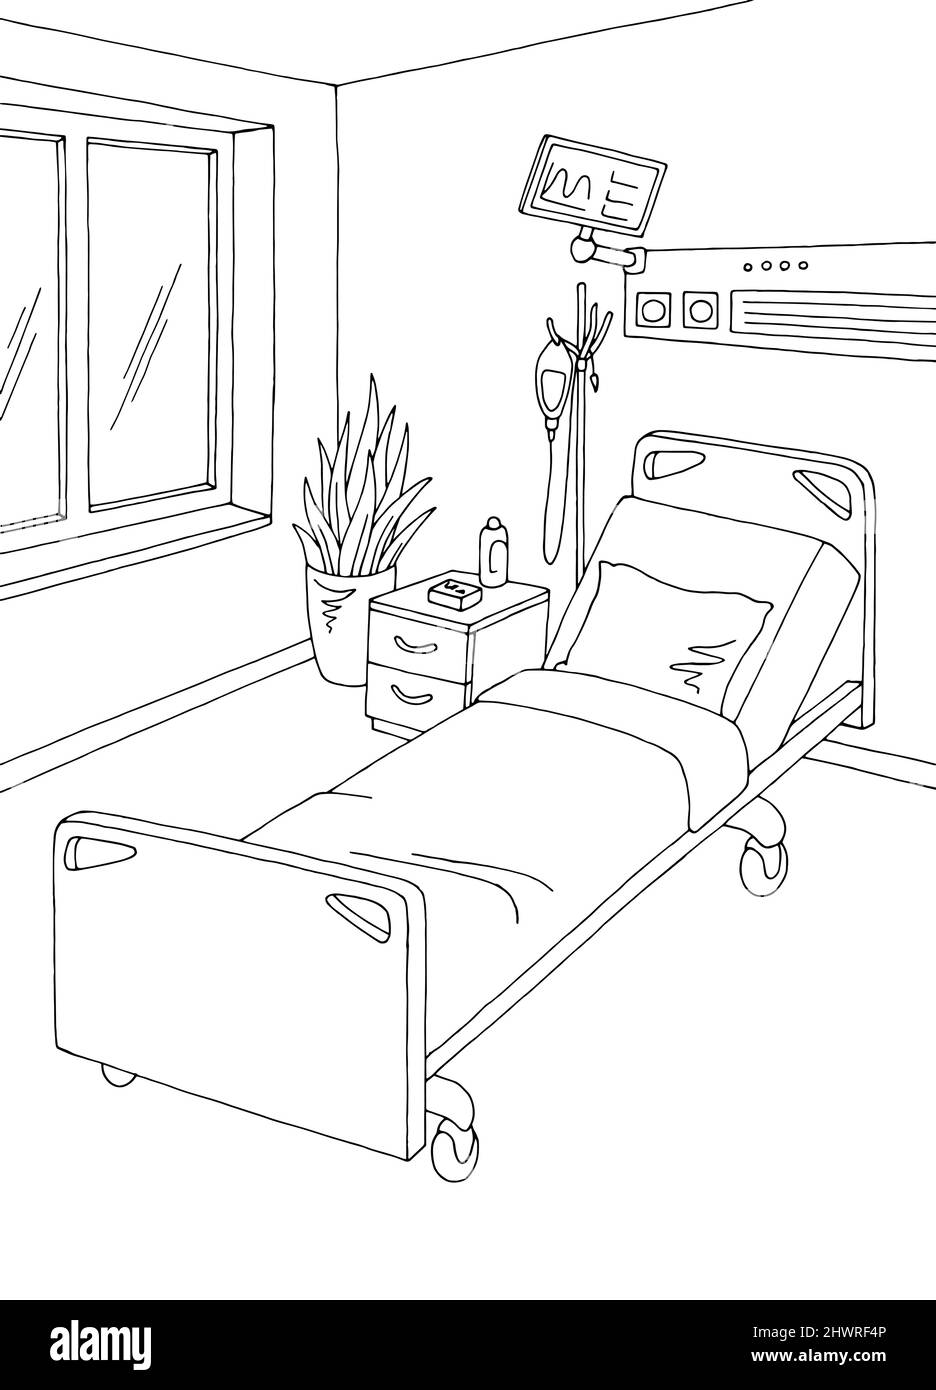 Image de la salle d'hôpital noir blanc vertical intérieur esquisse vecteur d'illustration Illustration de Vecteur